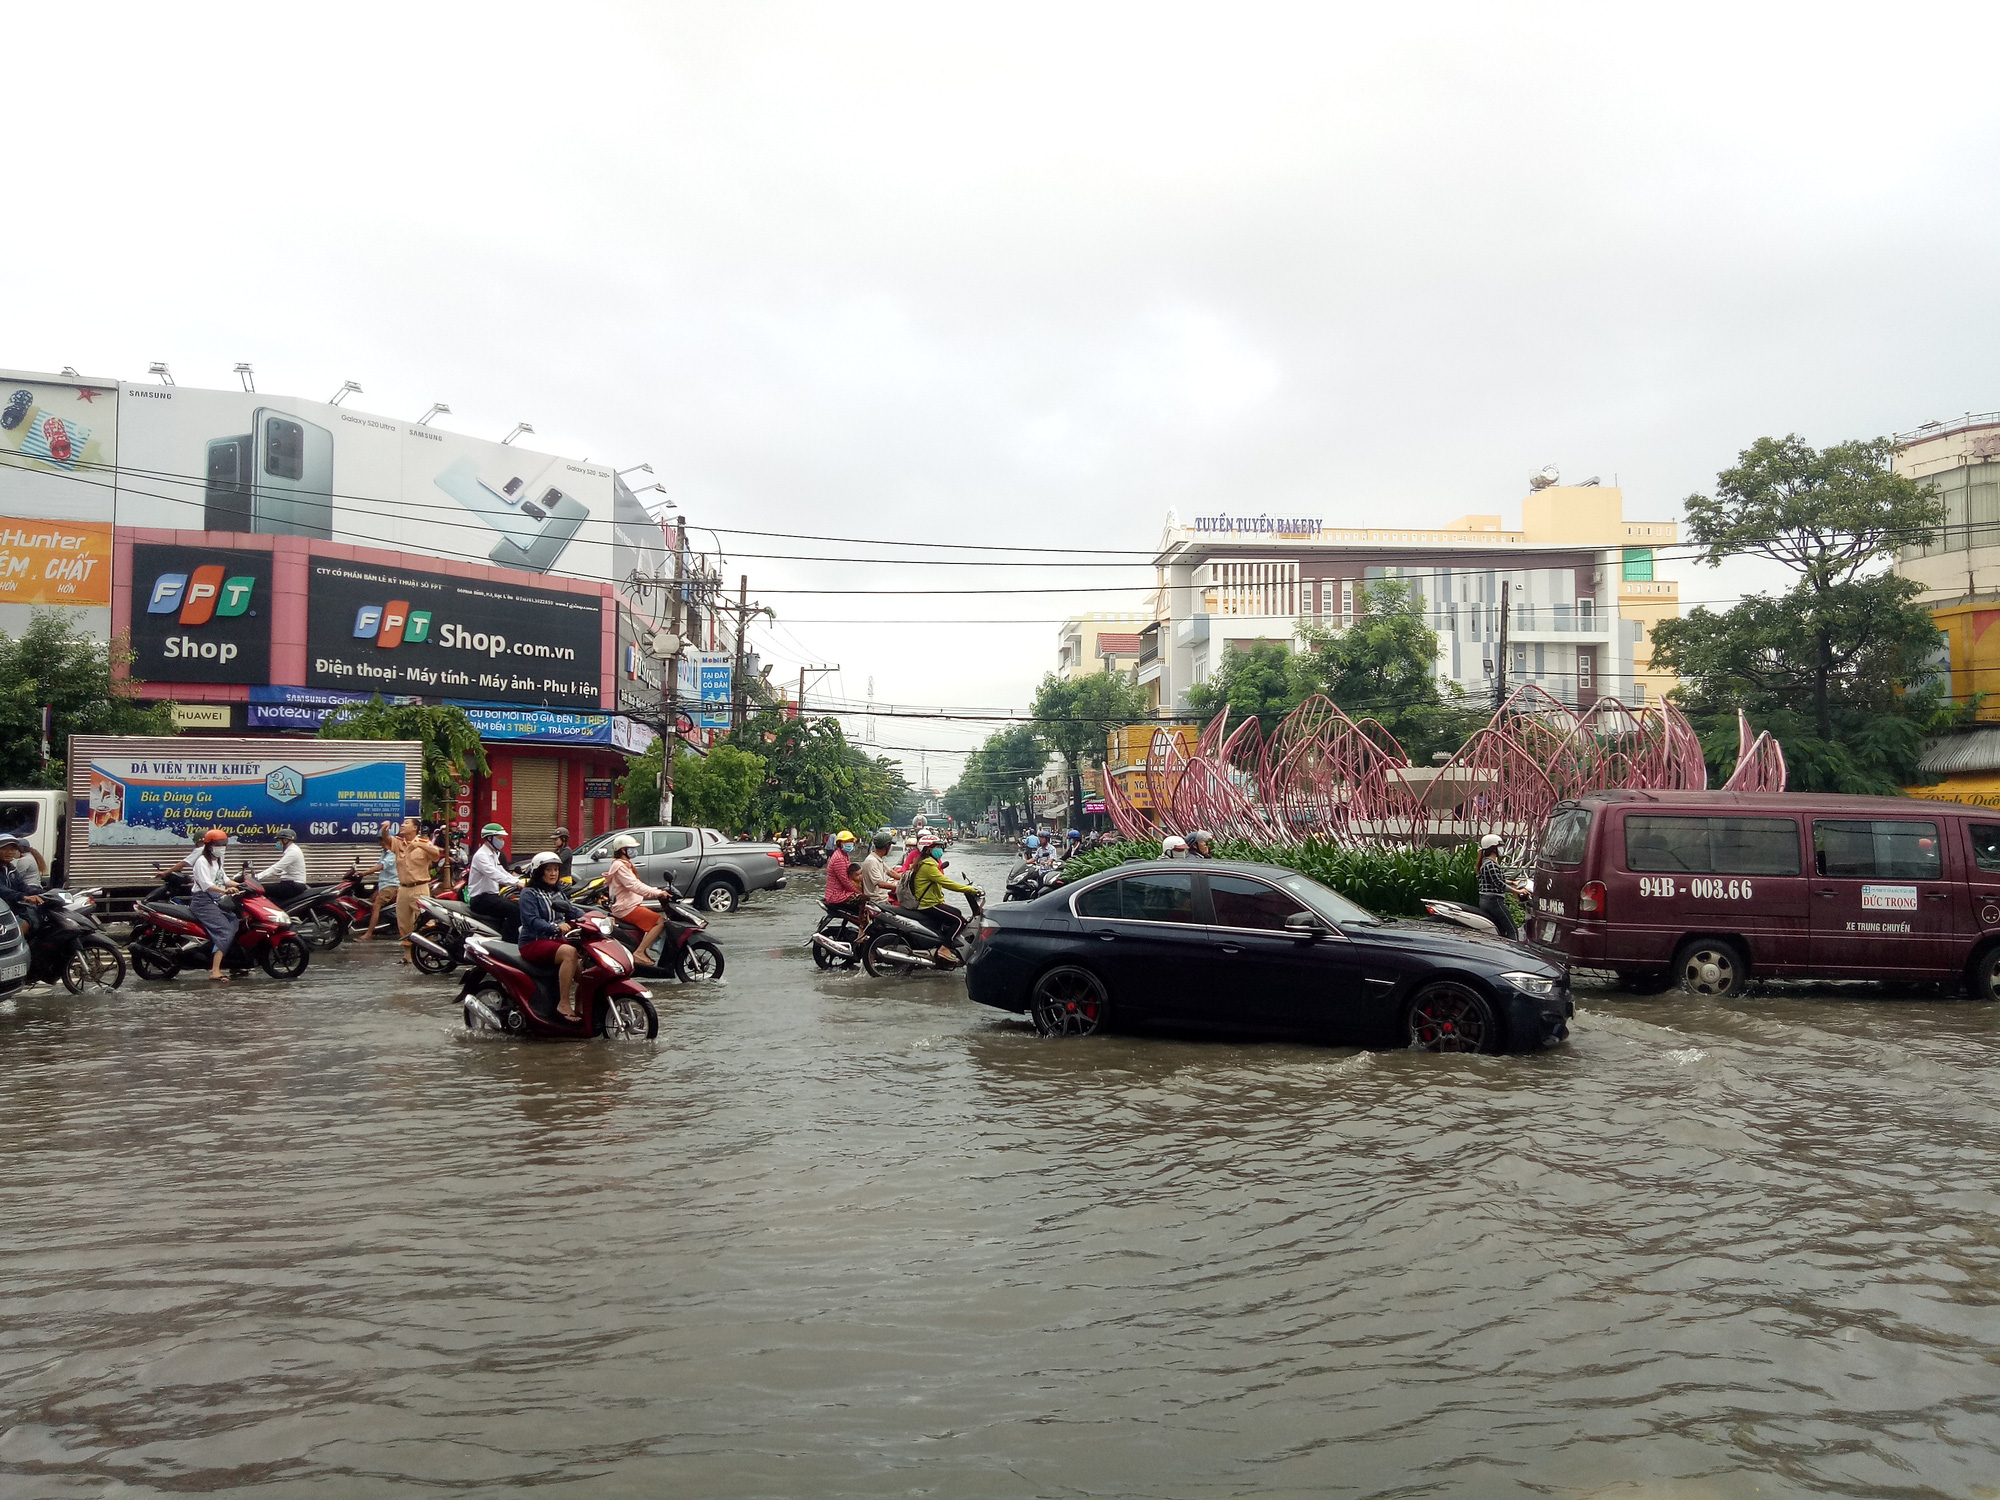 Đường phố Bạc Liêu thành sông sau trận mưa 2 tiếng - Ảnh 3.